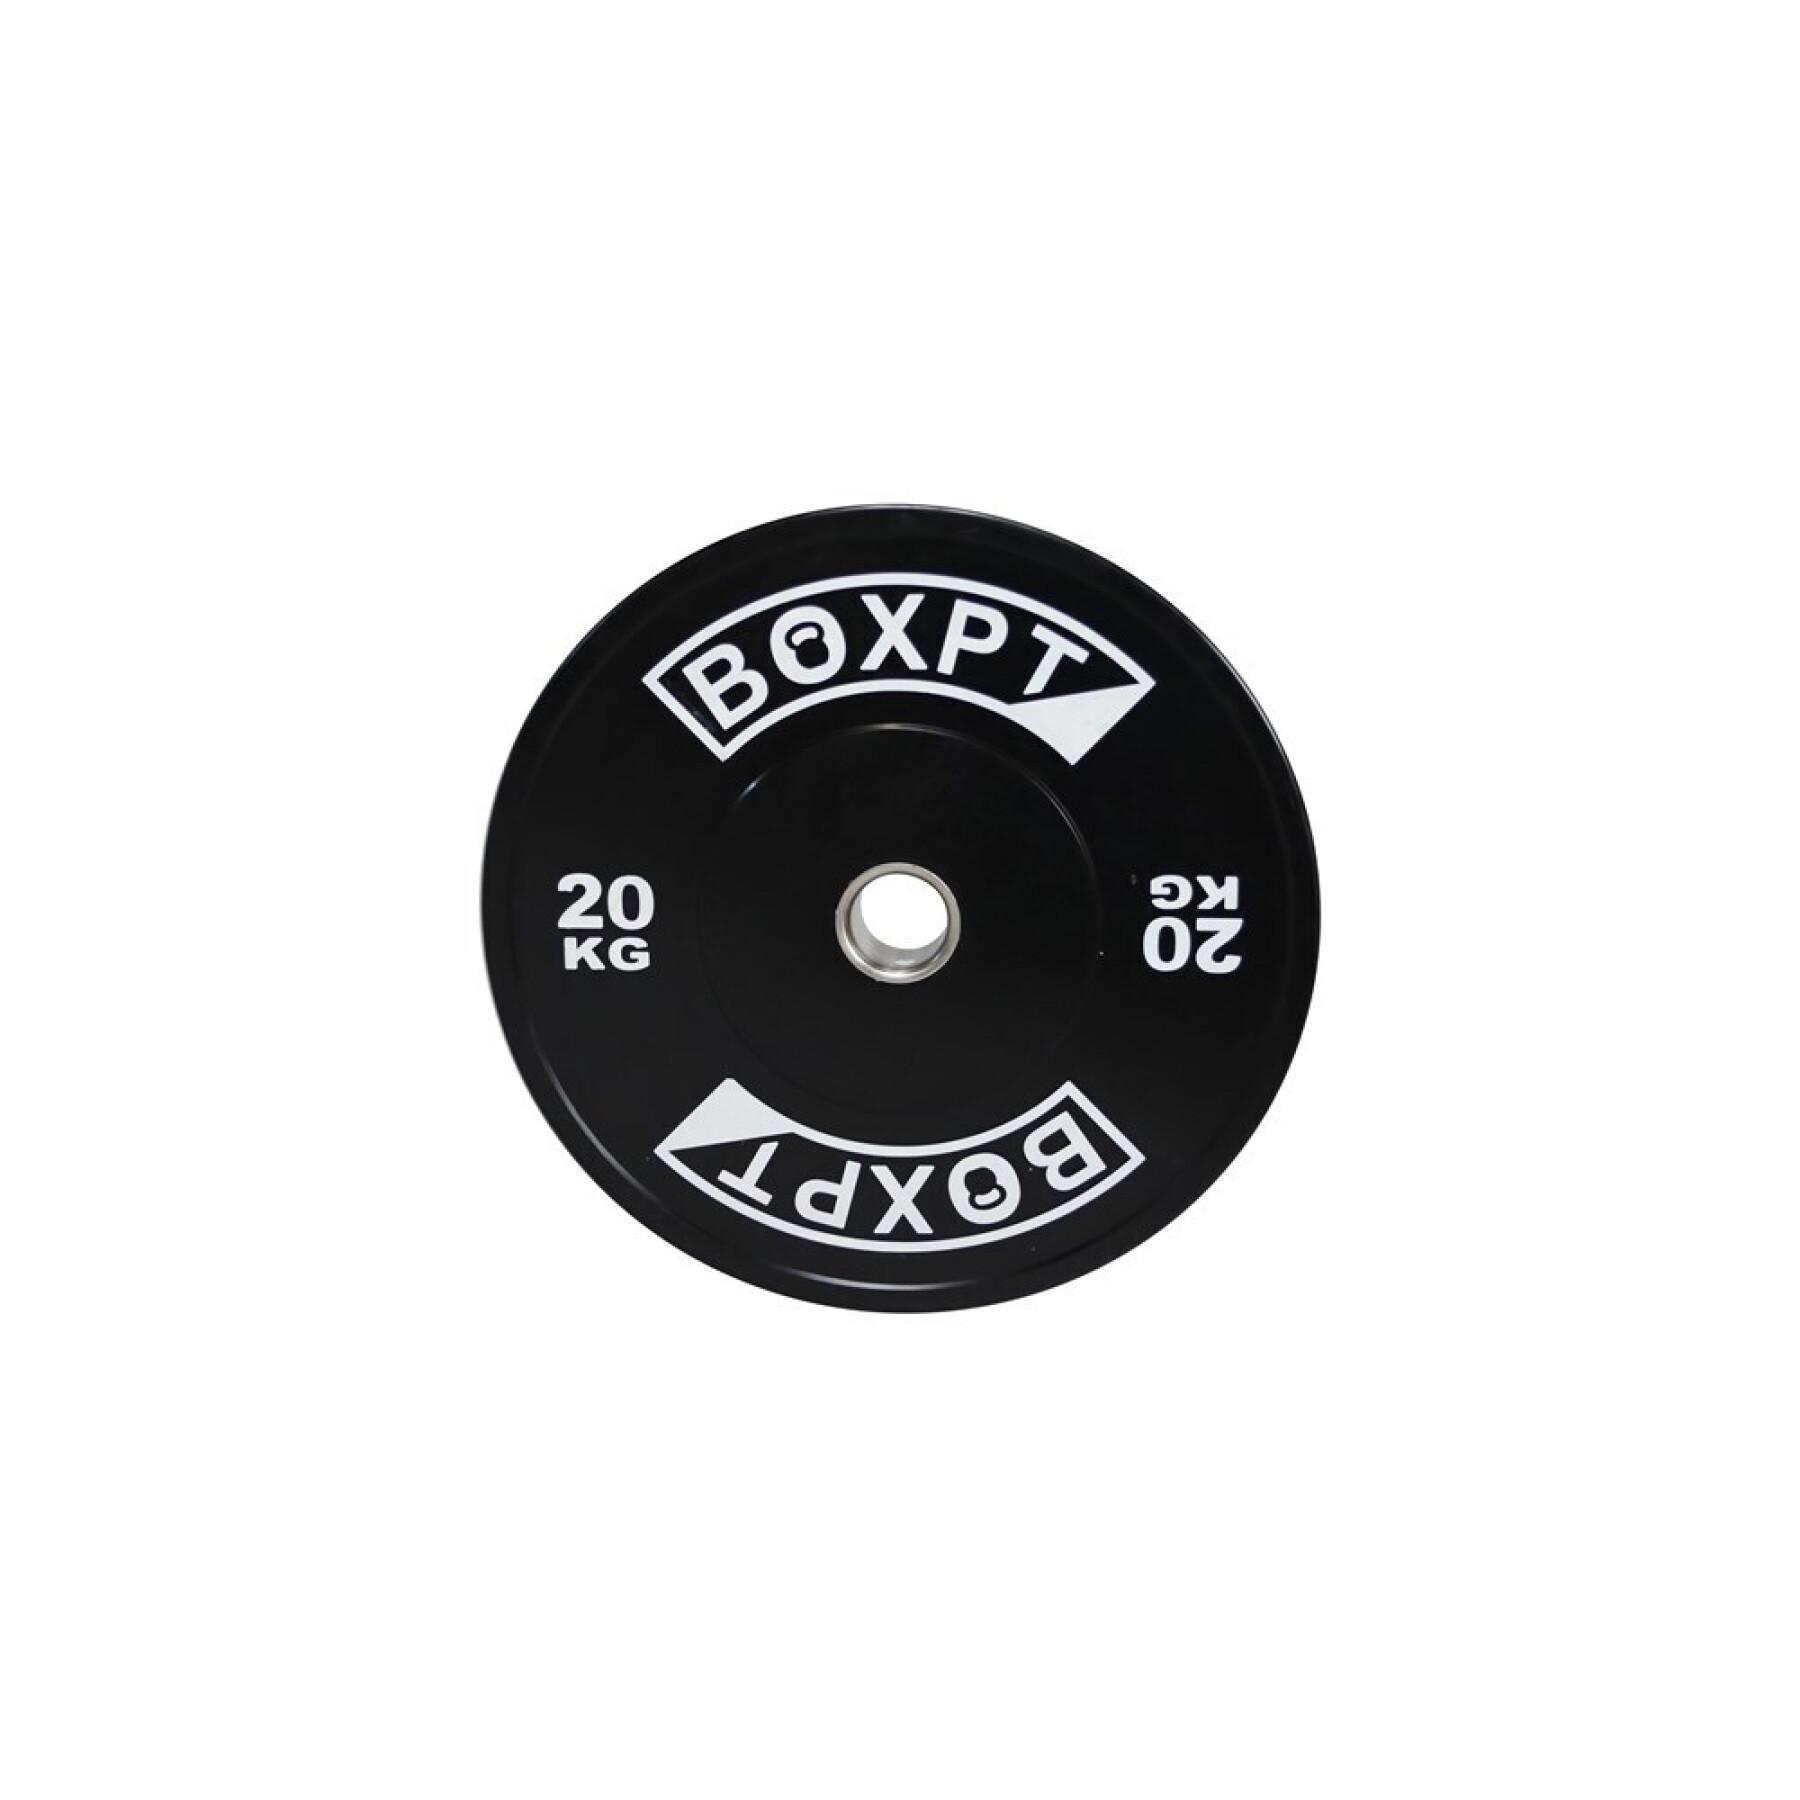 Bodybuilding schijf Boxpt 2.0 - 20 kg